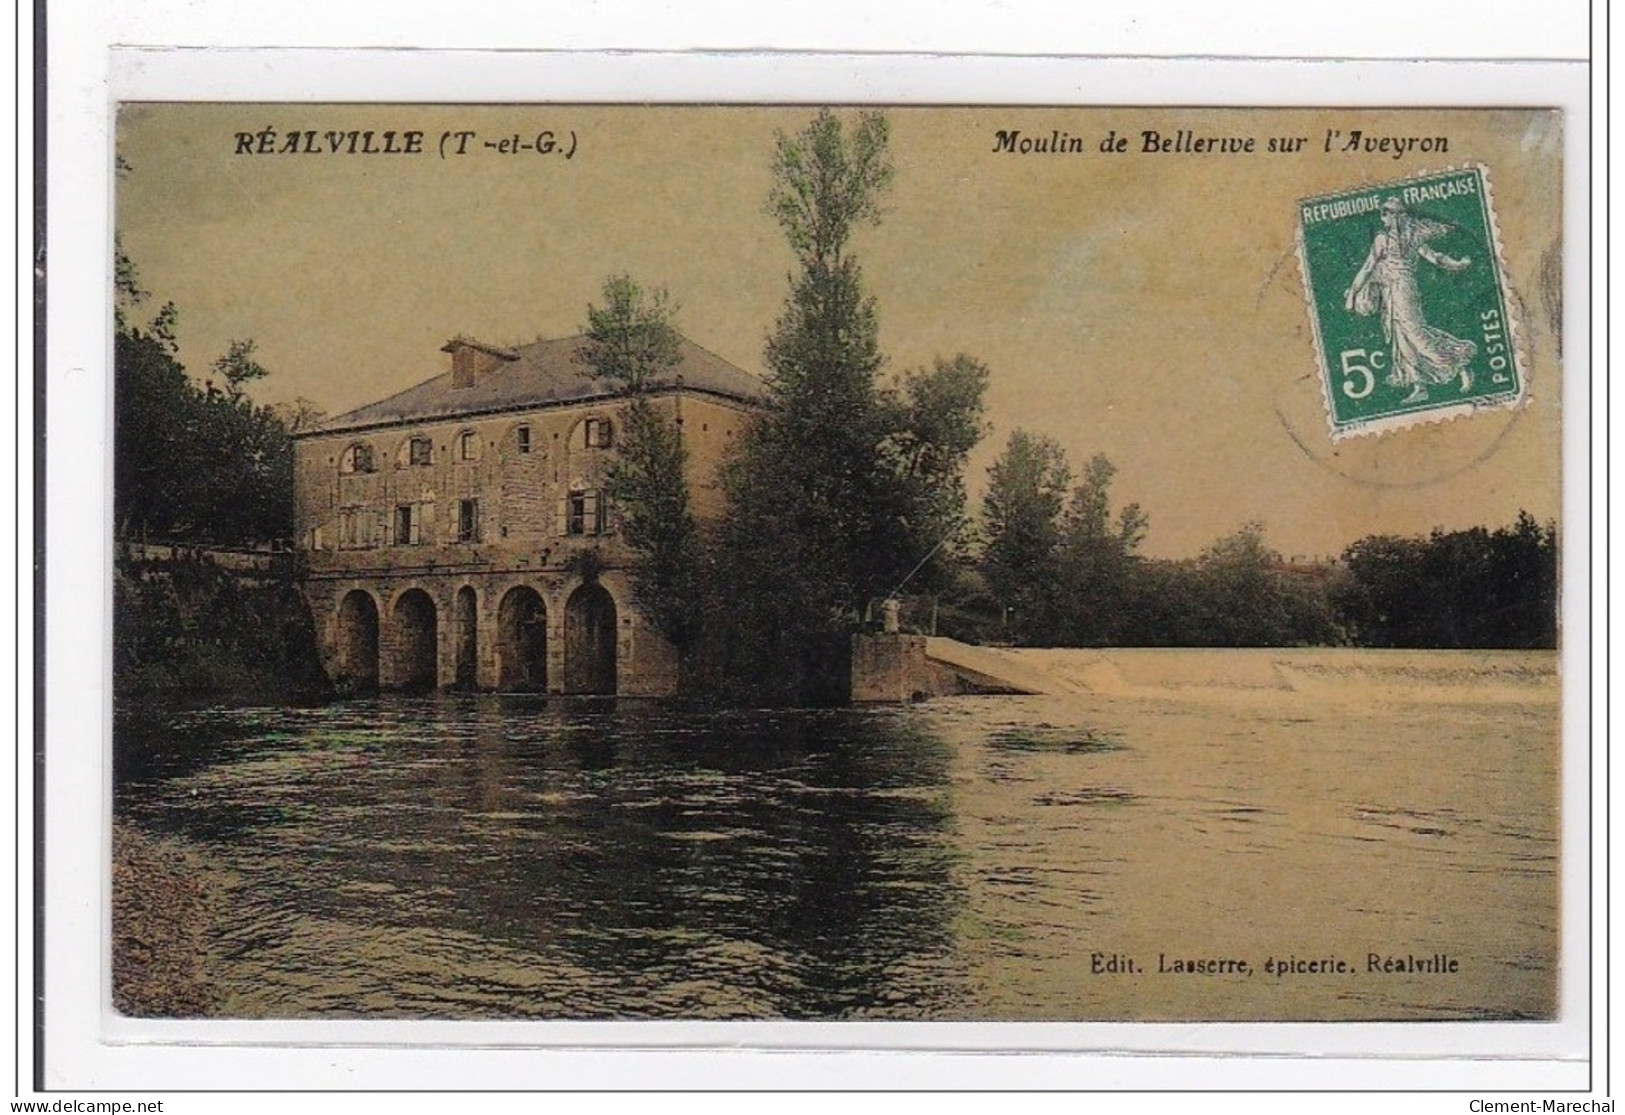 REALVILLE : Moulin De Bellerive Sur L'aveyron - Tres Bon Etat - Realville